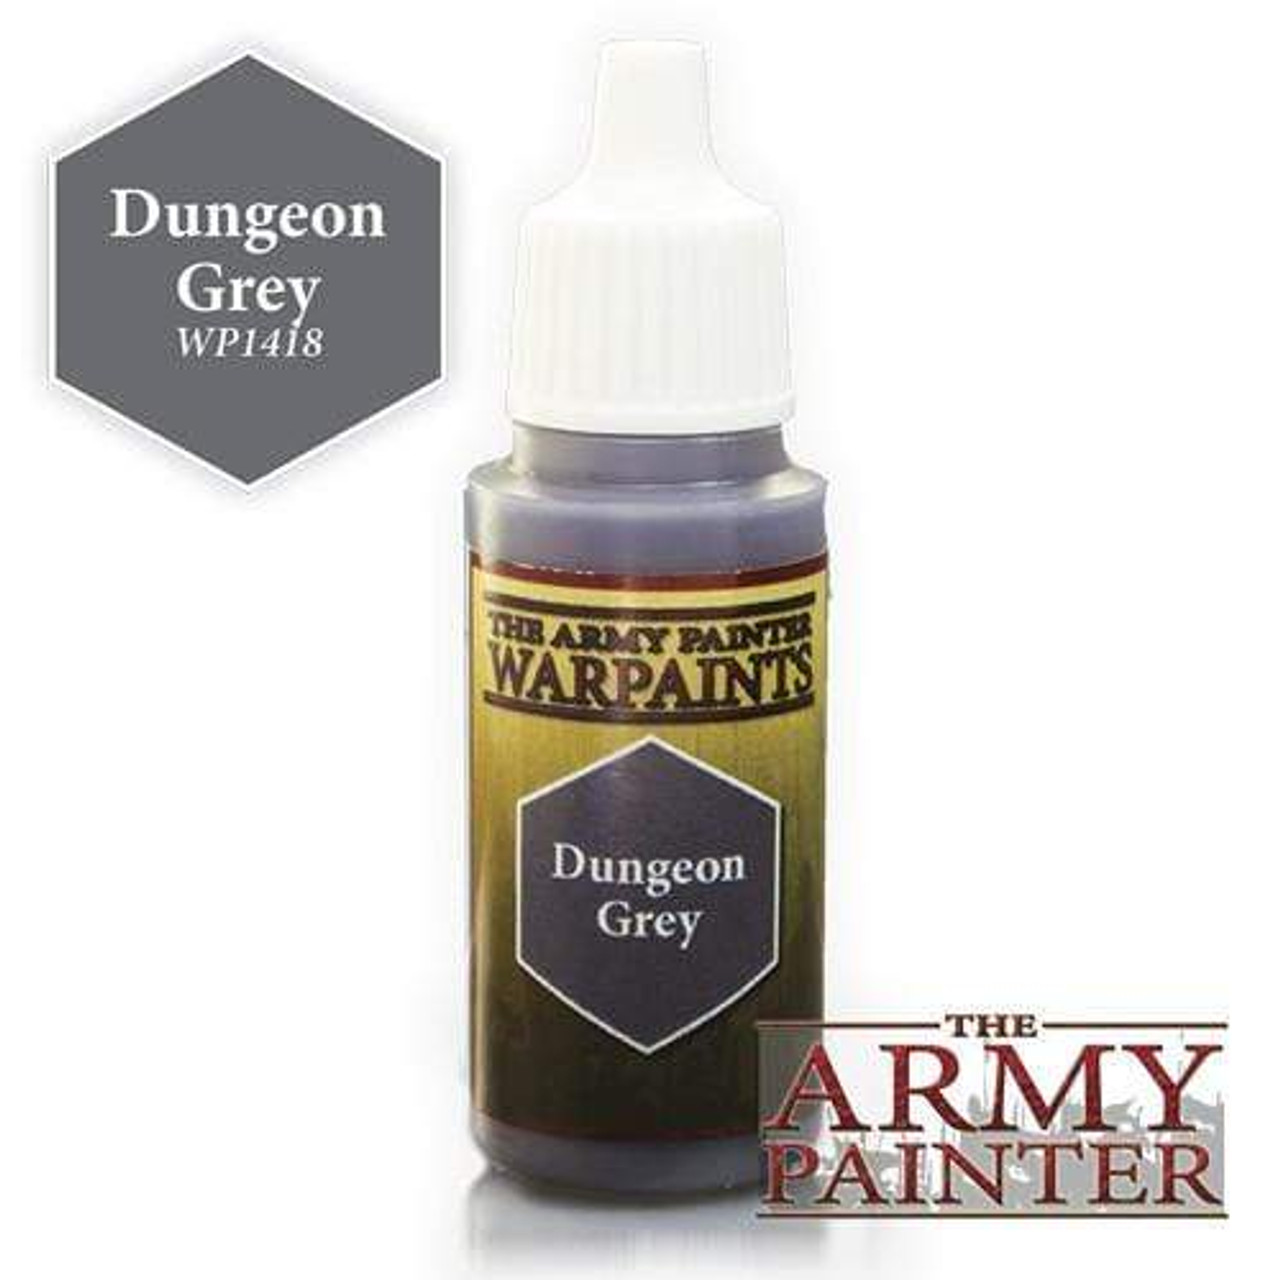 Army Painter Warpaint: Dungeon Grey